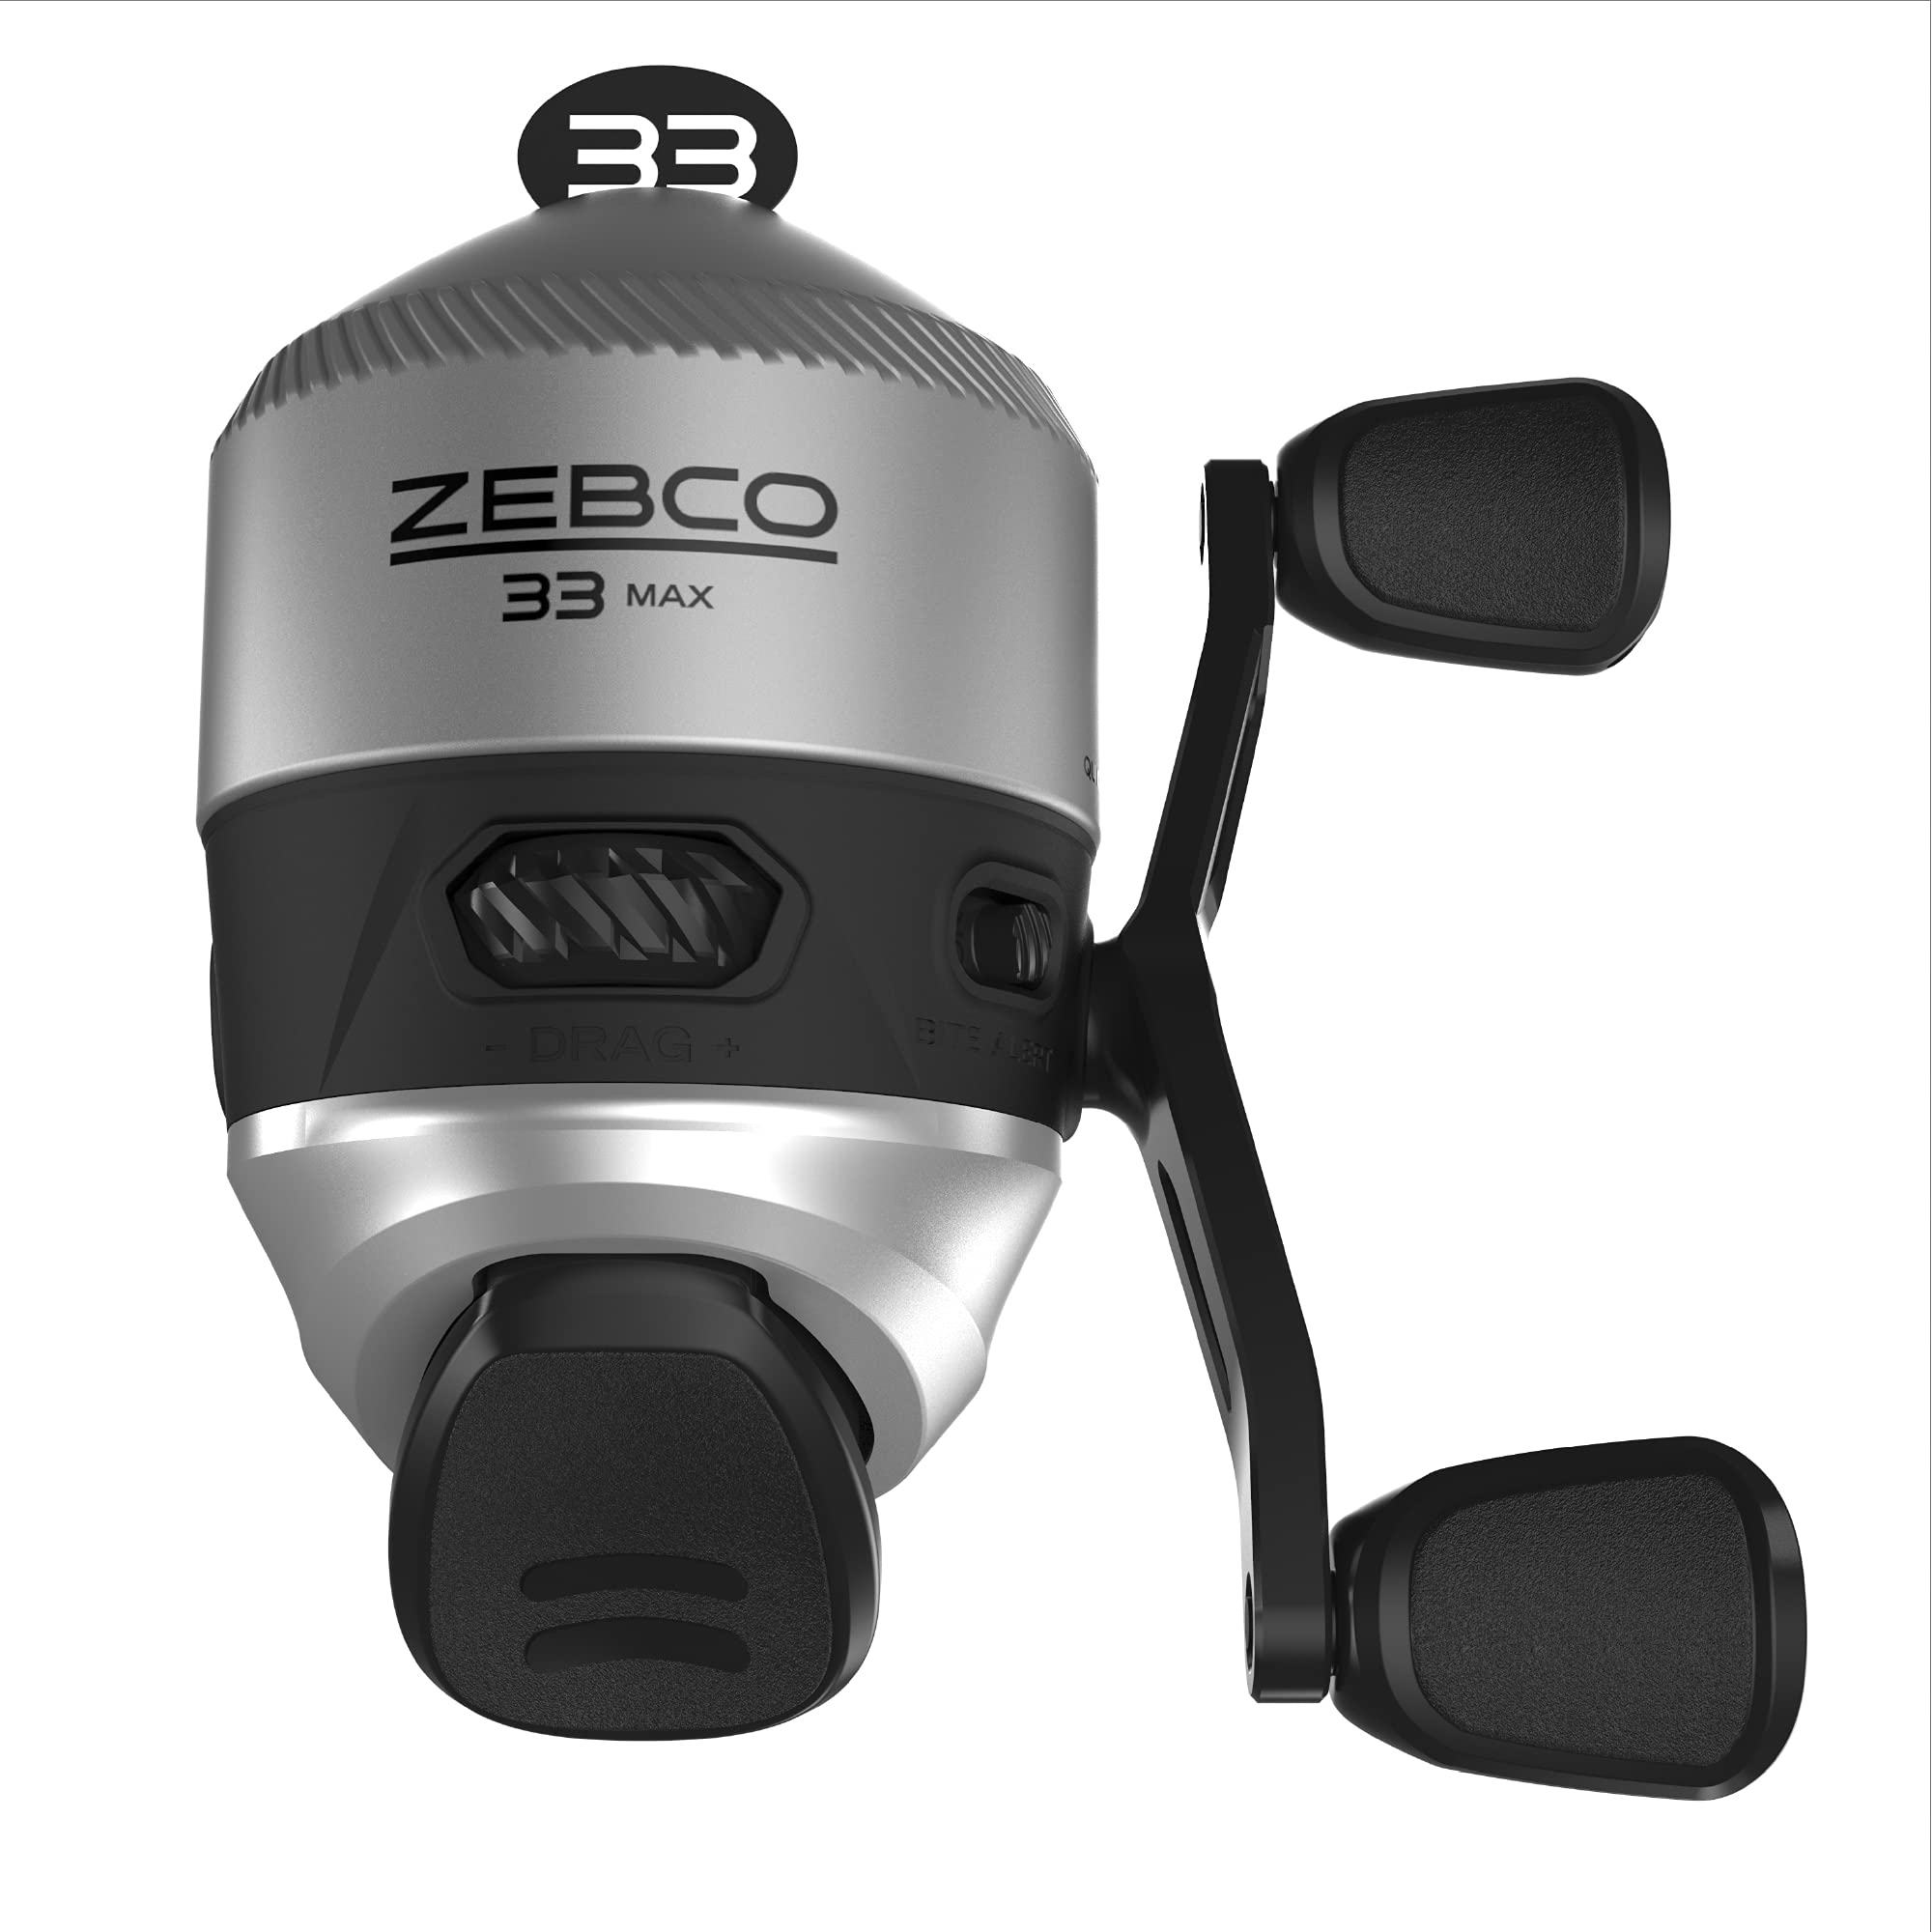 Zebco 33 MAX Spincast Angelrolle, glatt und leistungsstark, 2:6:1 Übersetzungsverhältnis und Quickset Anti-Reverse mit Bissanzeiger, Leichter Graphitrahmen und einstellbarem Drehrad, Silber/schwarz